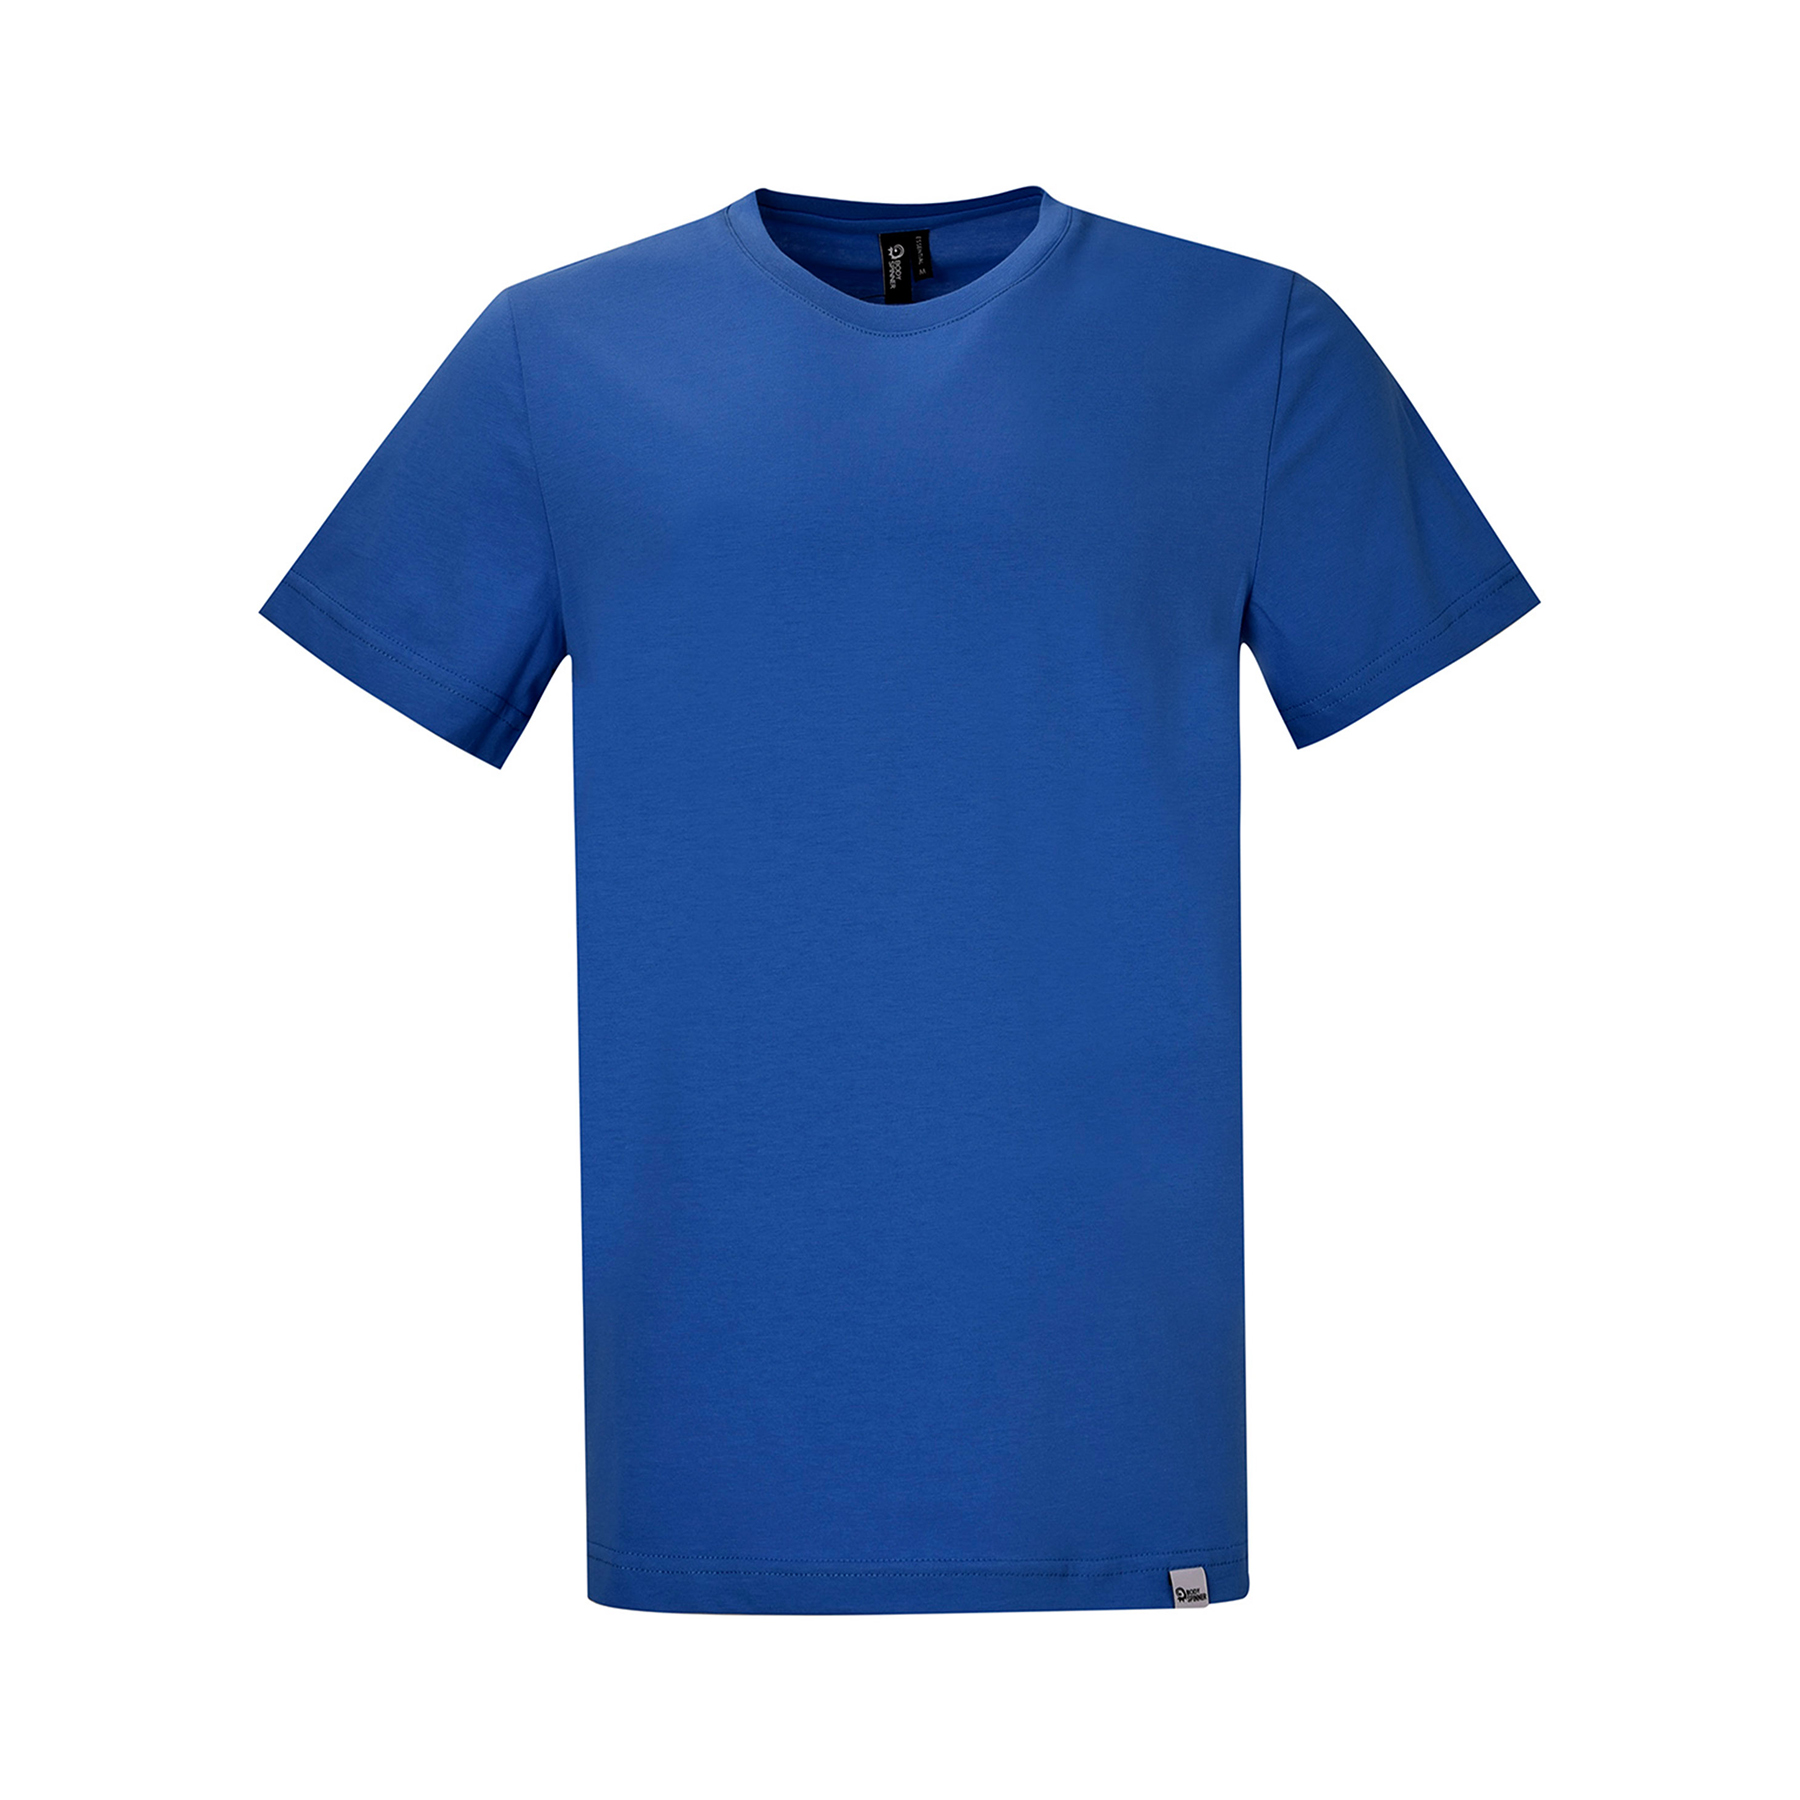 تی شرت آستین کوتاه مردانه بادی اسپینر مدل 11964737 کد 1 رنگ آبی -  - 1